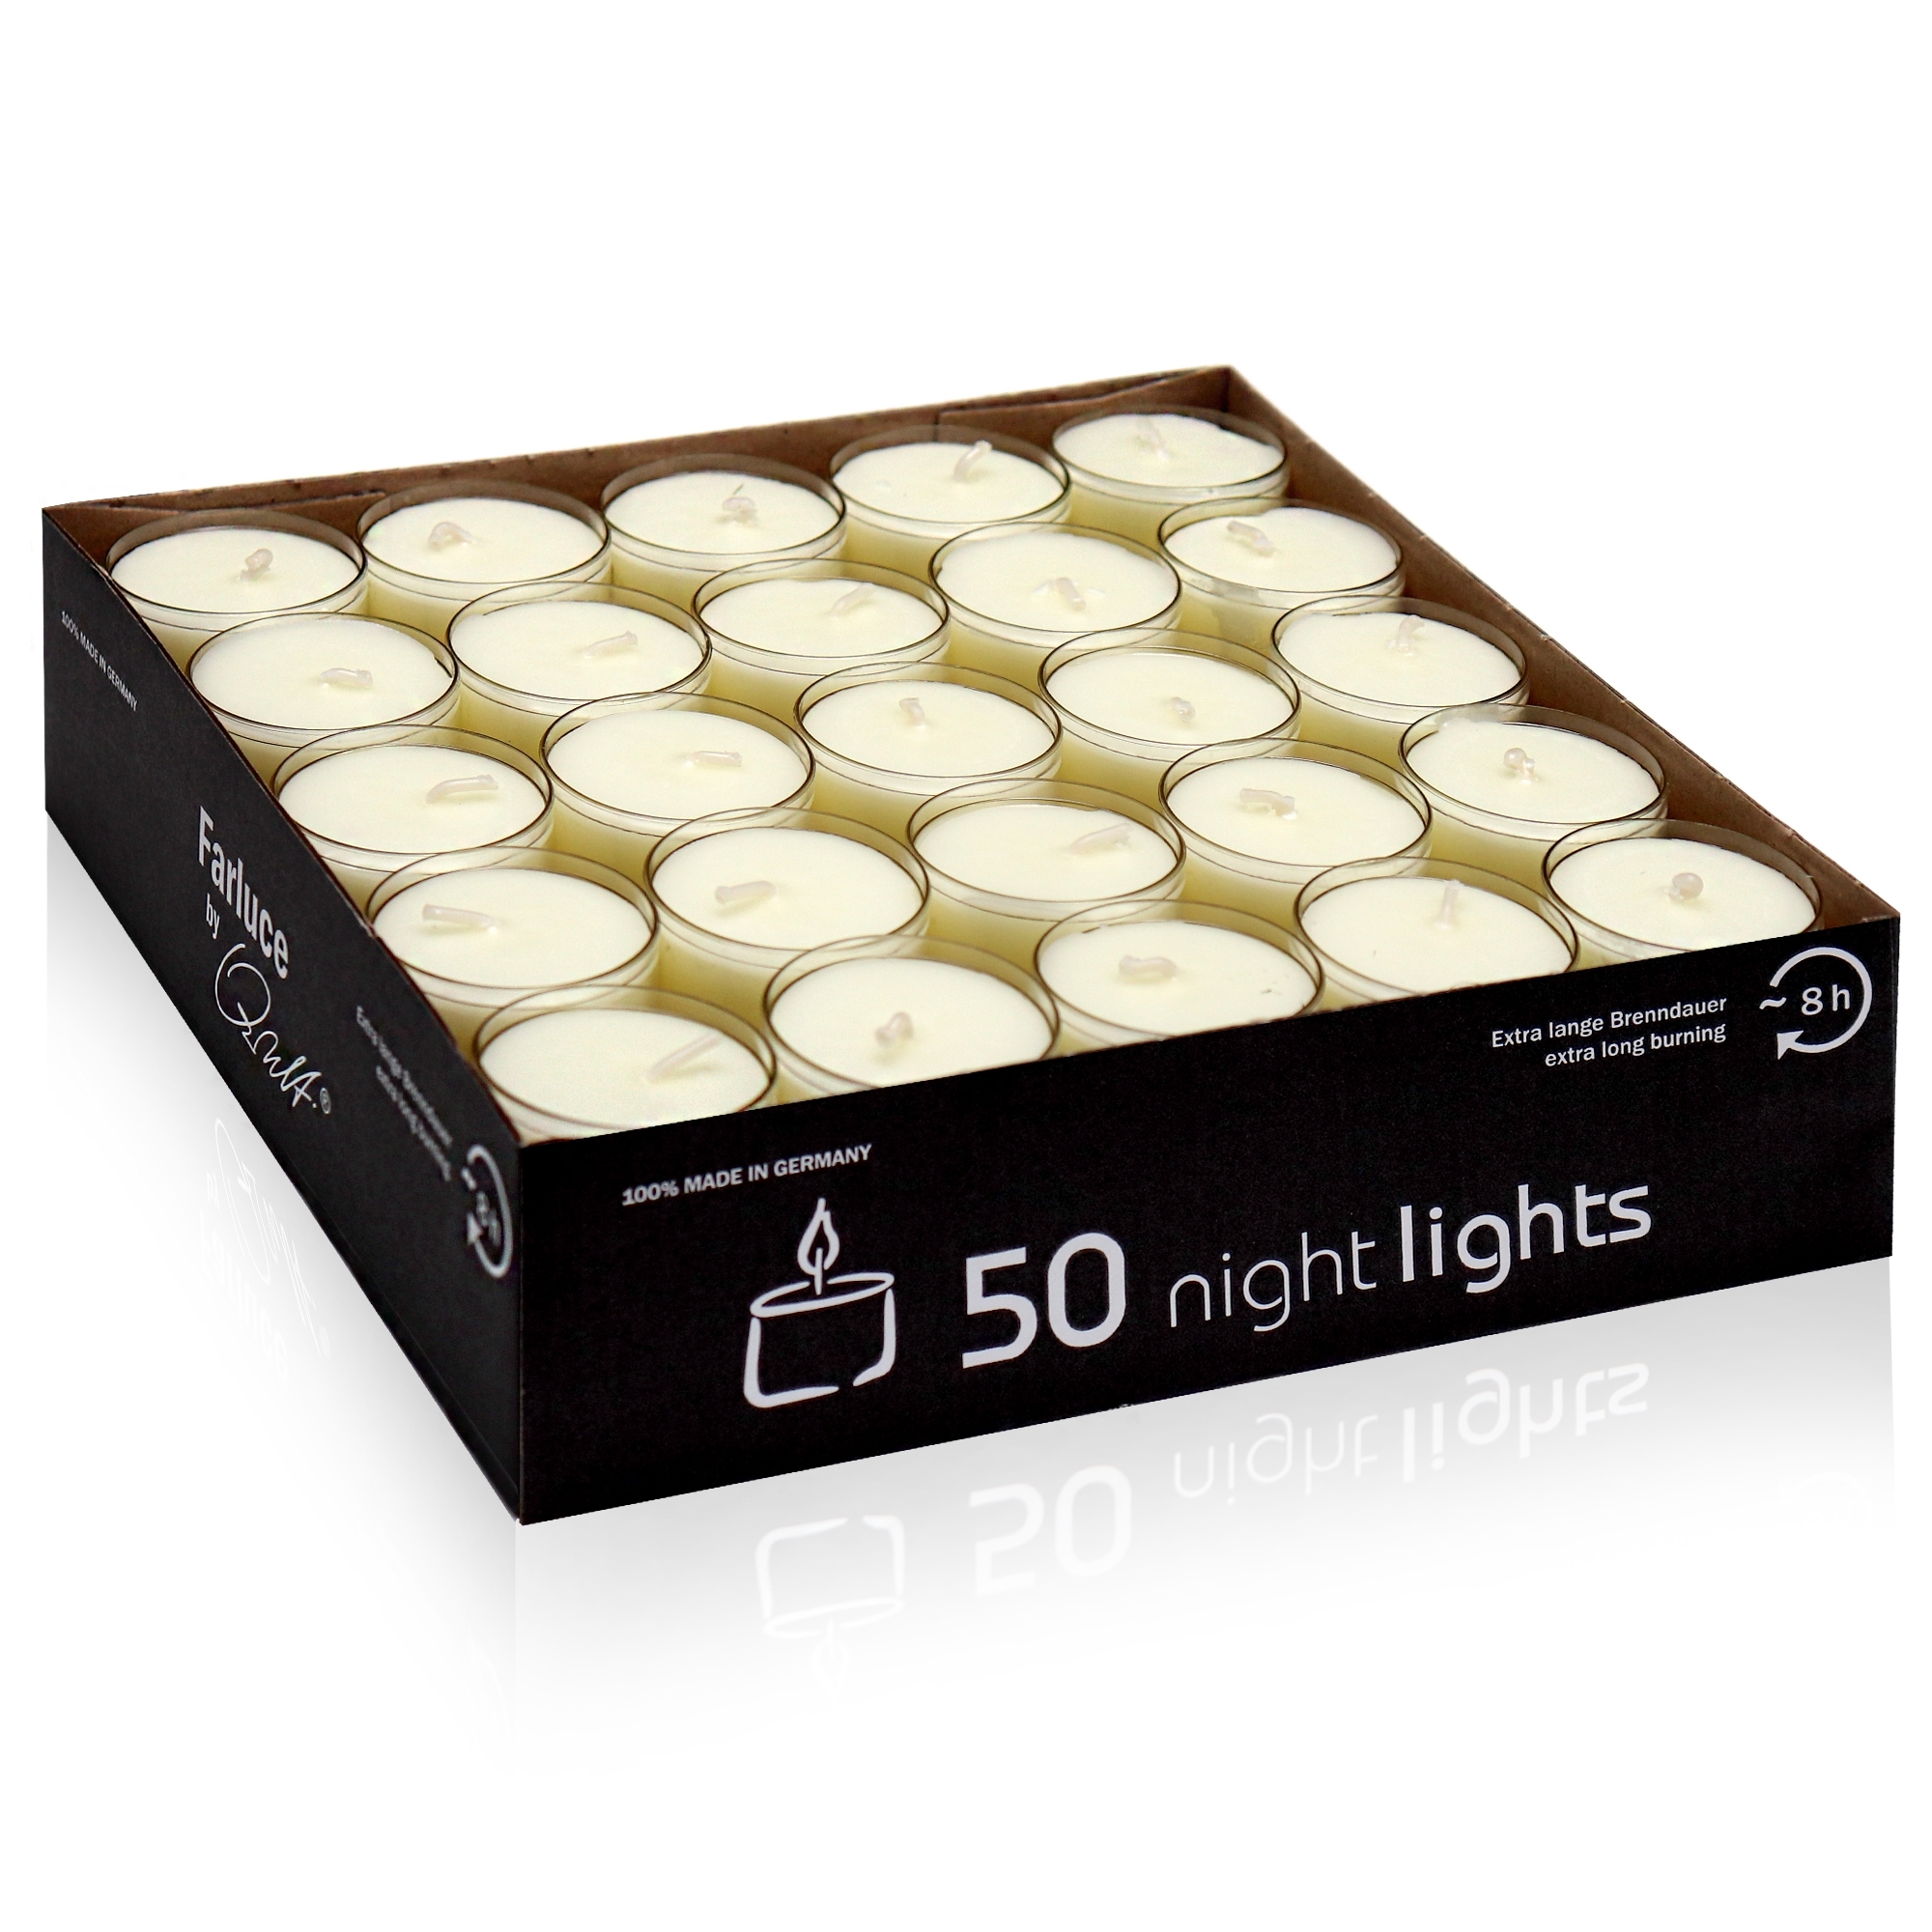 Qult Farluce Nightlights - 50 tealights  - Ø 38 x 25 mm